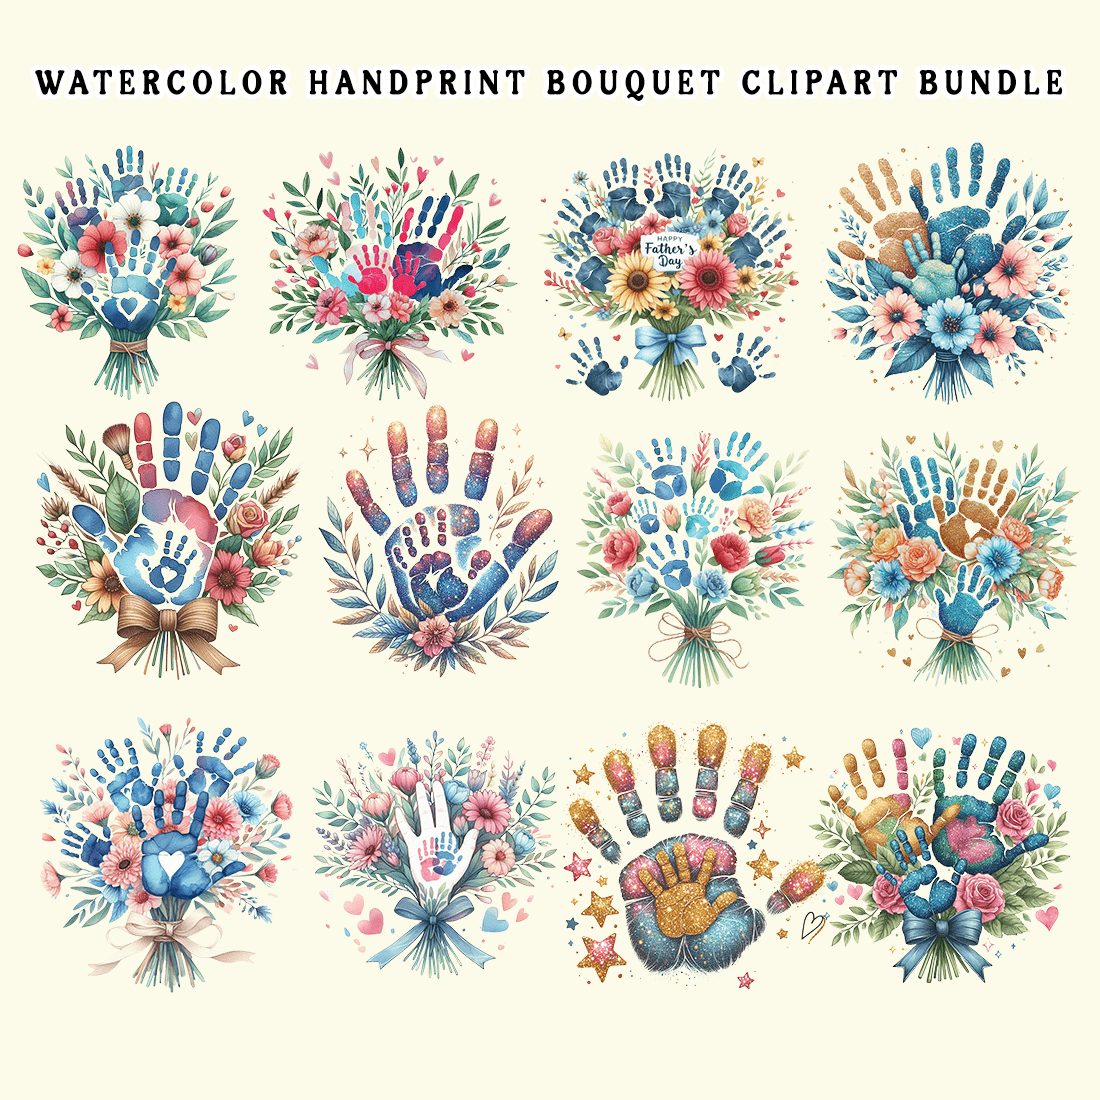 Watercolor Handprint Bouquet Clipart Bundle preview image.